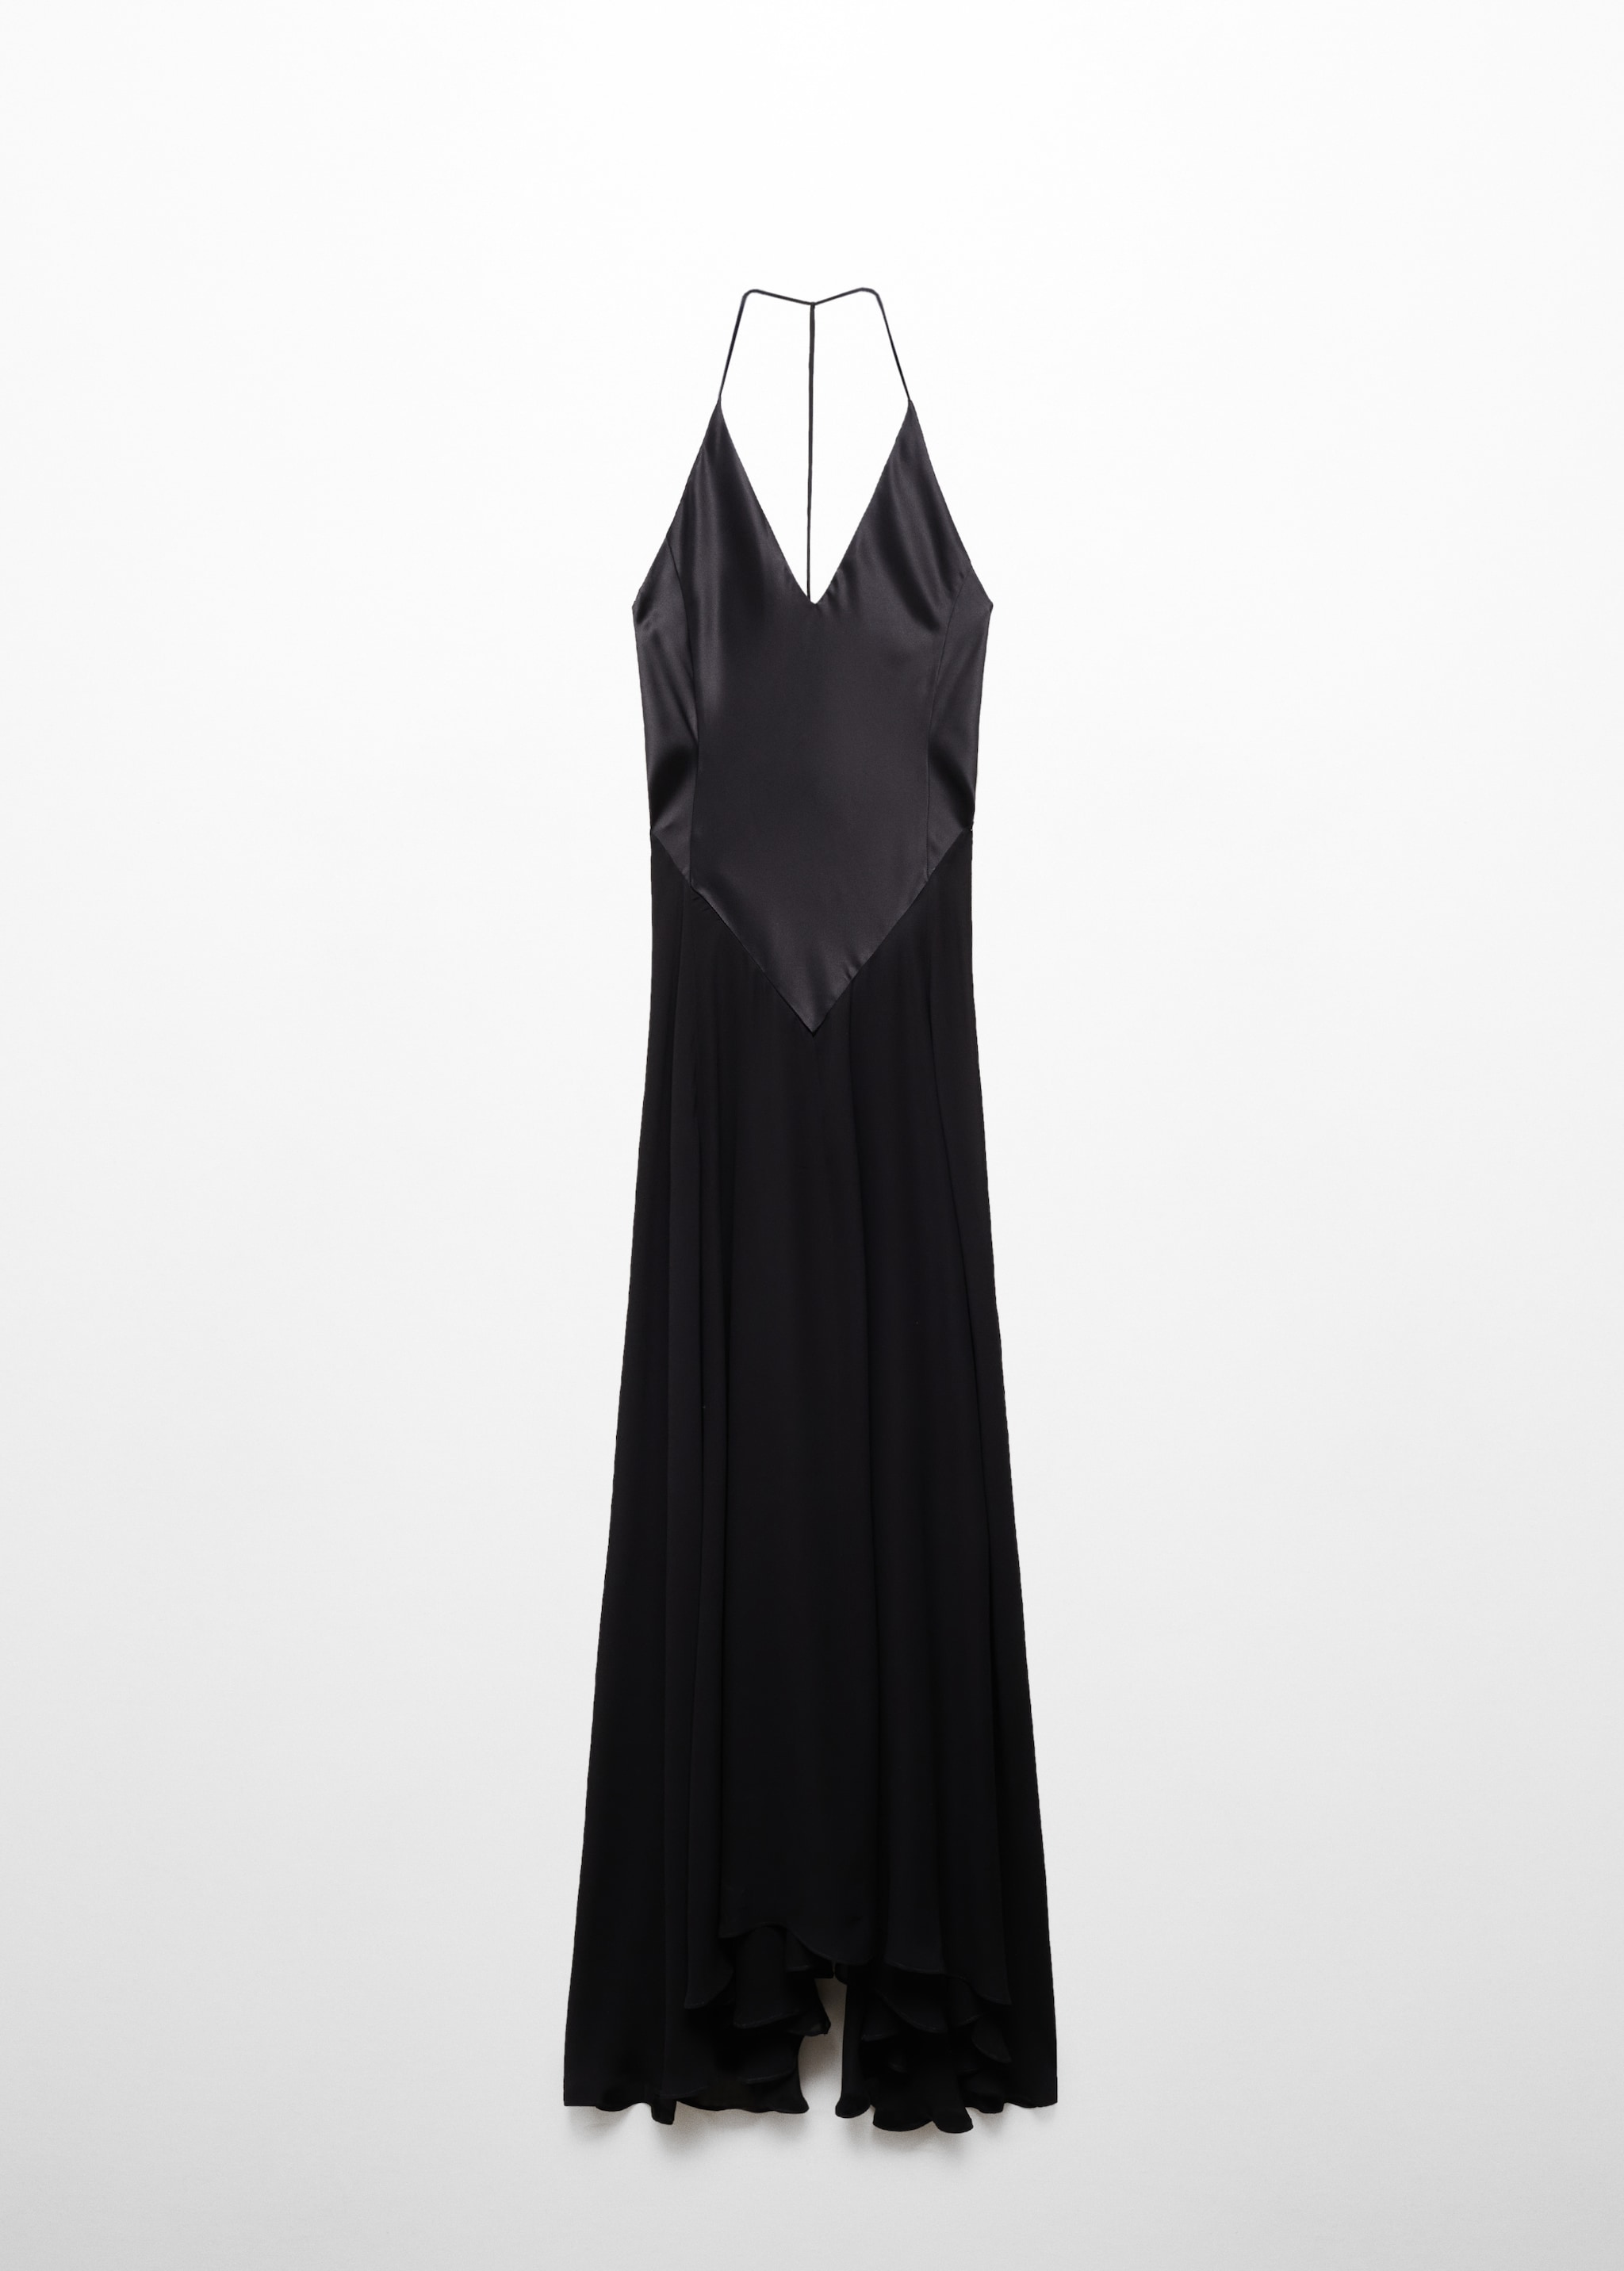 Полупрозрачное платье из шелка с комбинированным лифом - Изделие без модели